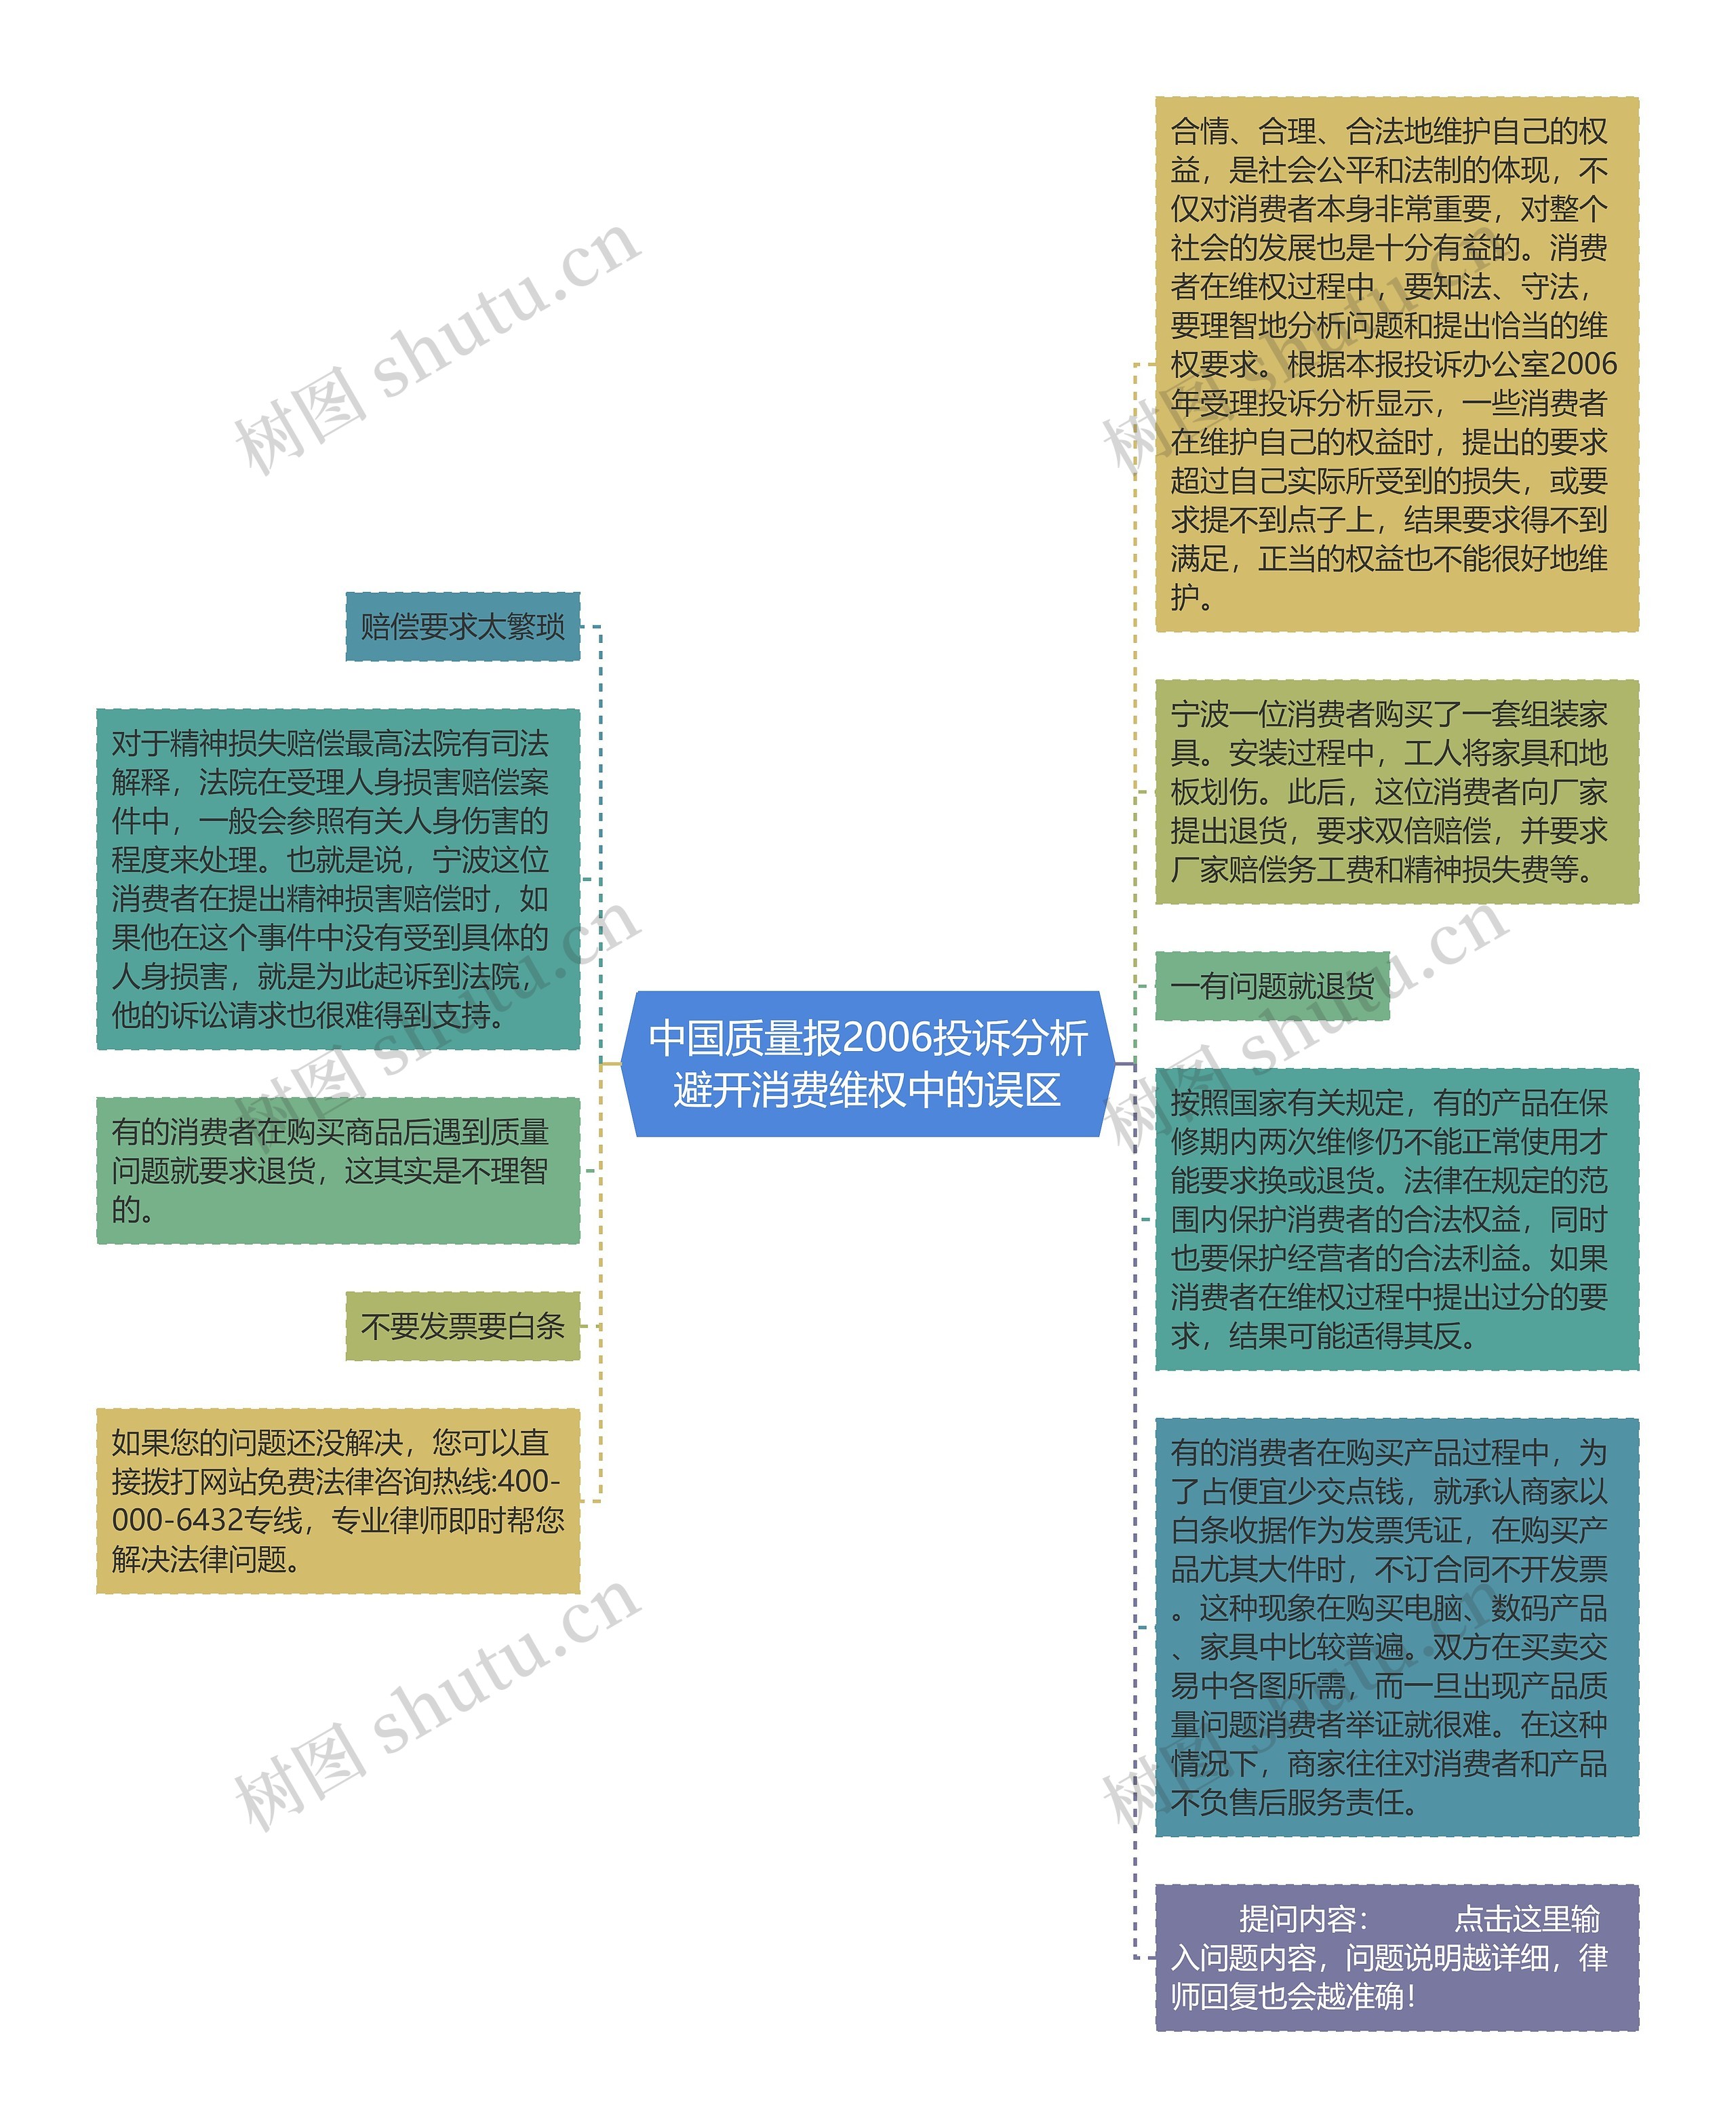 中国质量报2006投诉分析避开消费维权中的误区思维导图